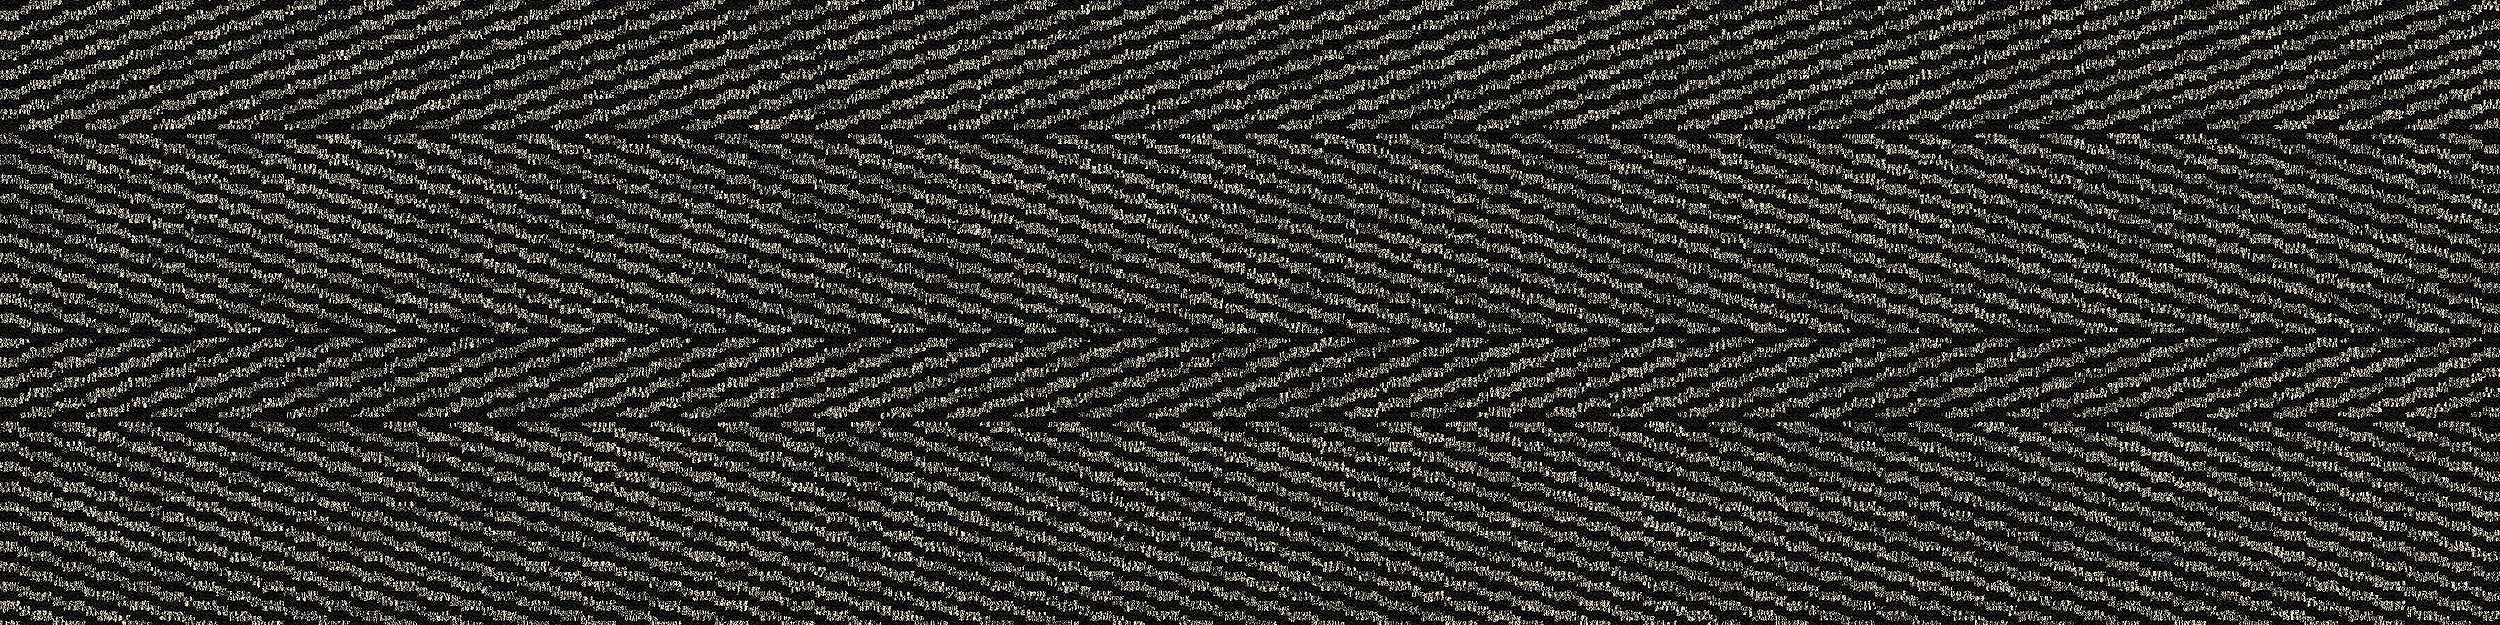 Stitch In Time Carpet Tile In Black Stitch imagen número 6